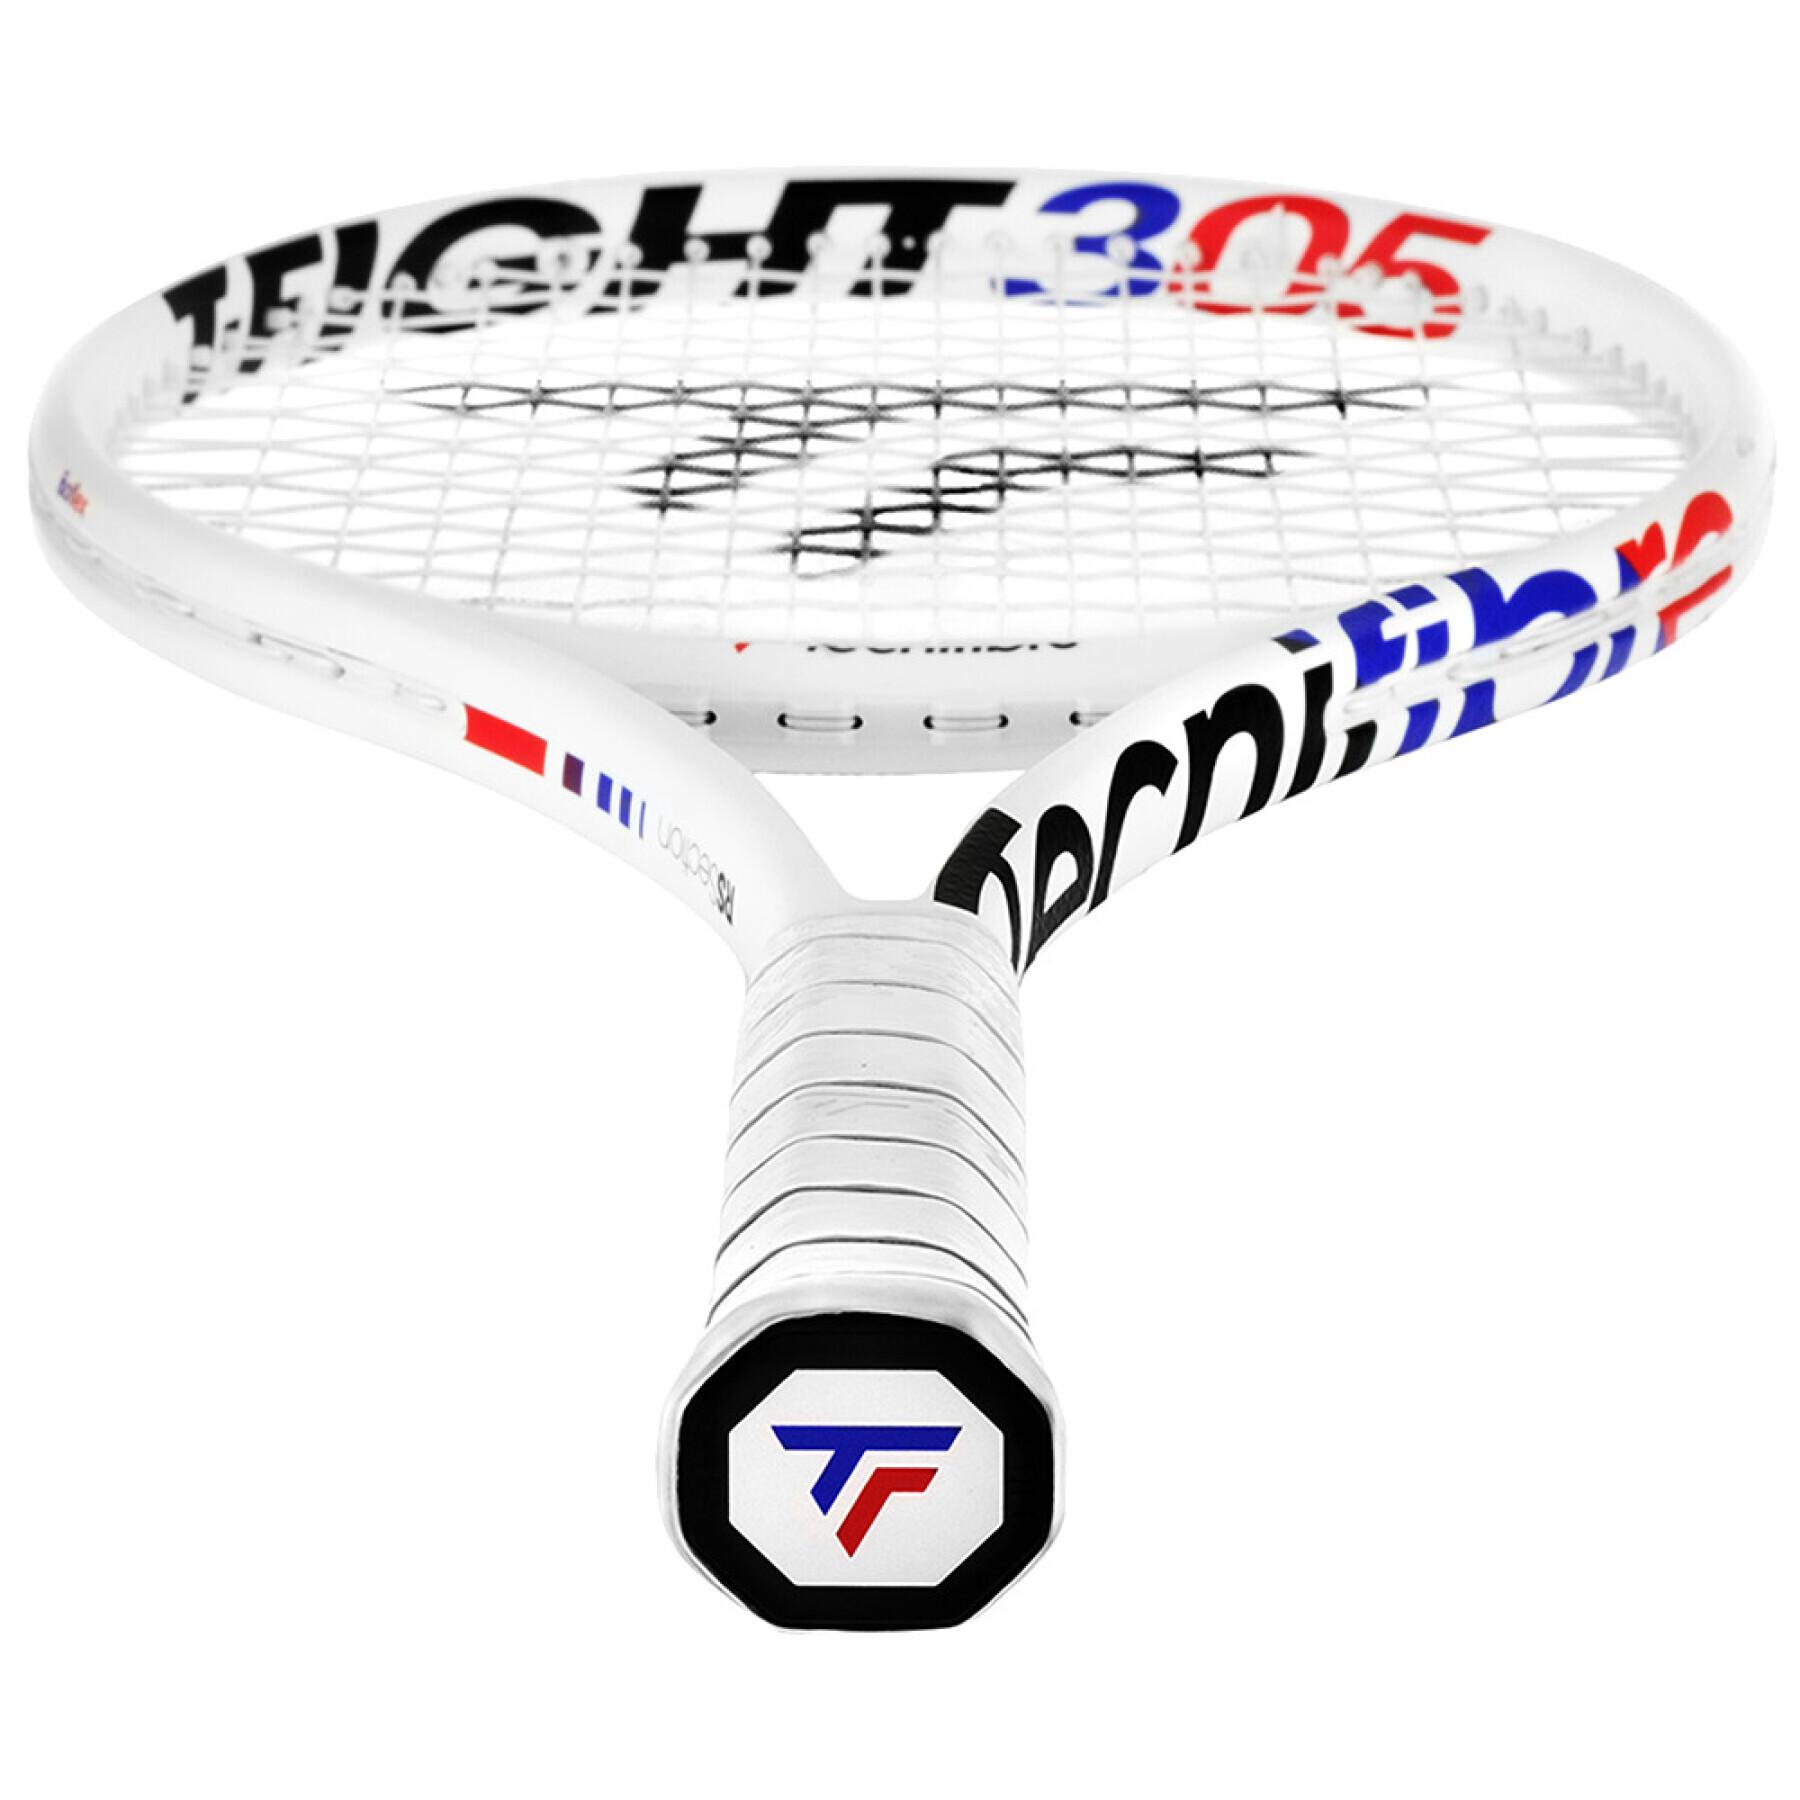 Racchetta da tennis Tecnifibre T-fight 305 Isoflex